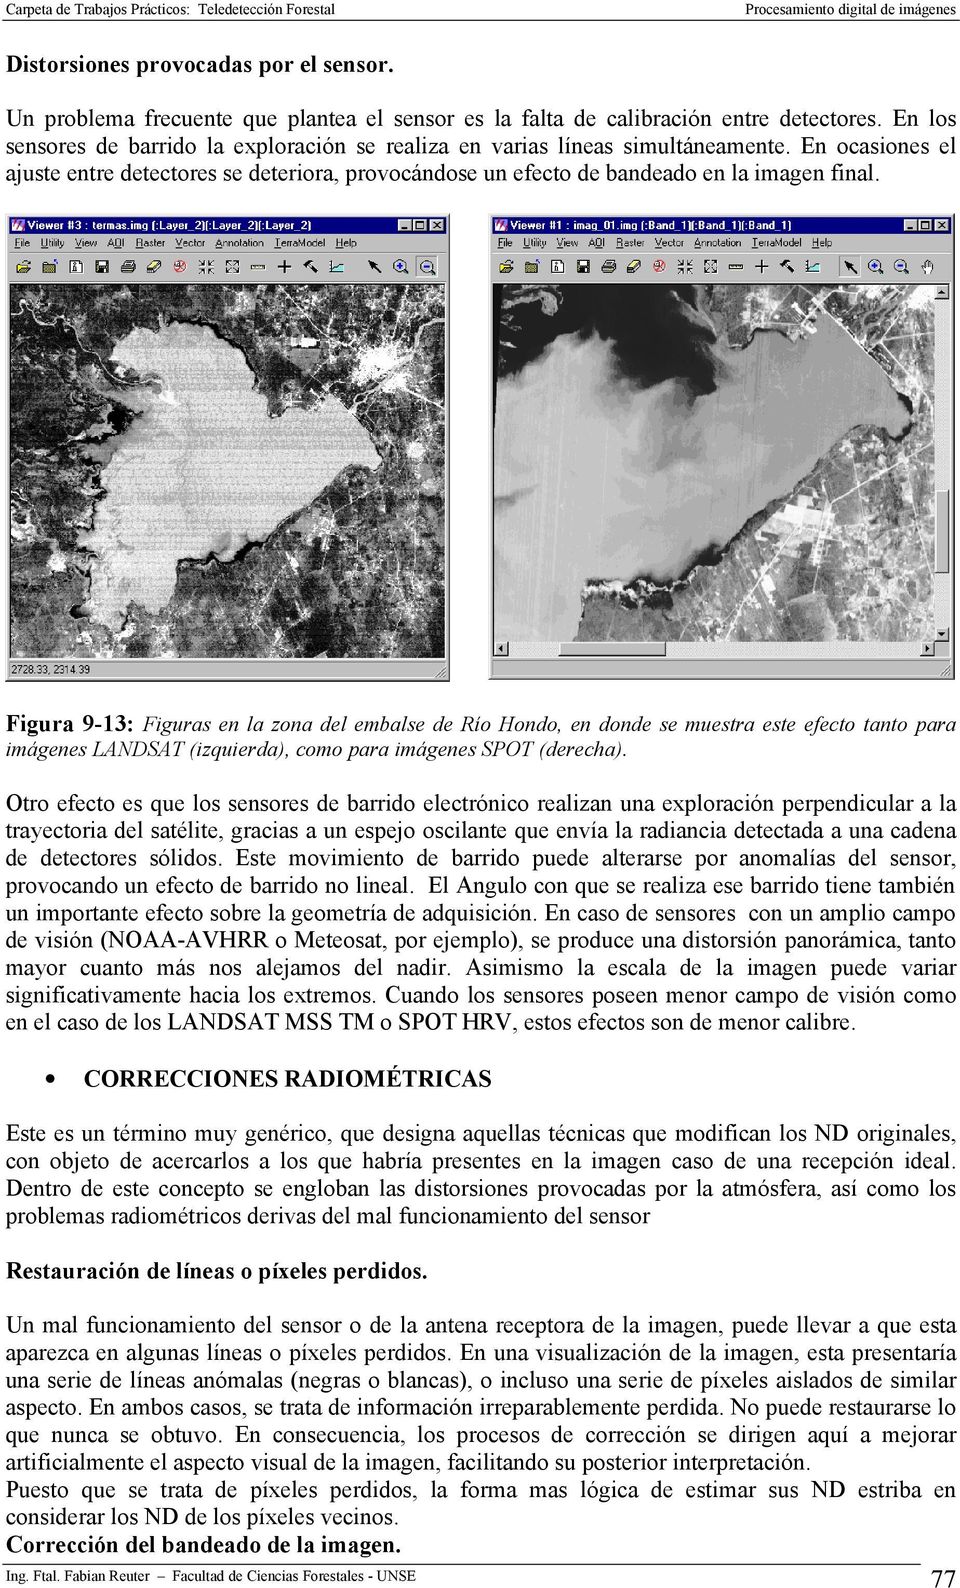 Figura 9-13: Figuras en la zona del embalse de Río Hondo, en donde se muestra este efecto tanto para imágenes LANDSAT (izquierda), como para imágenes SPOT (derecha).